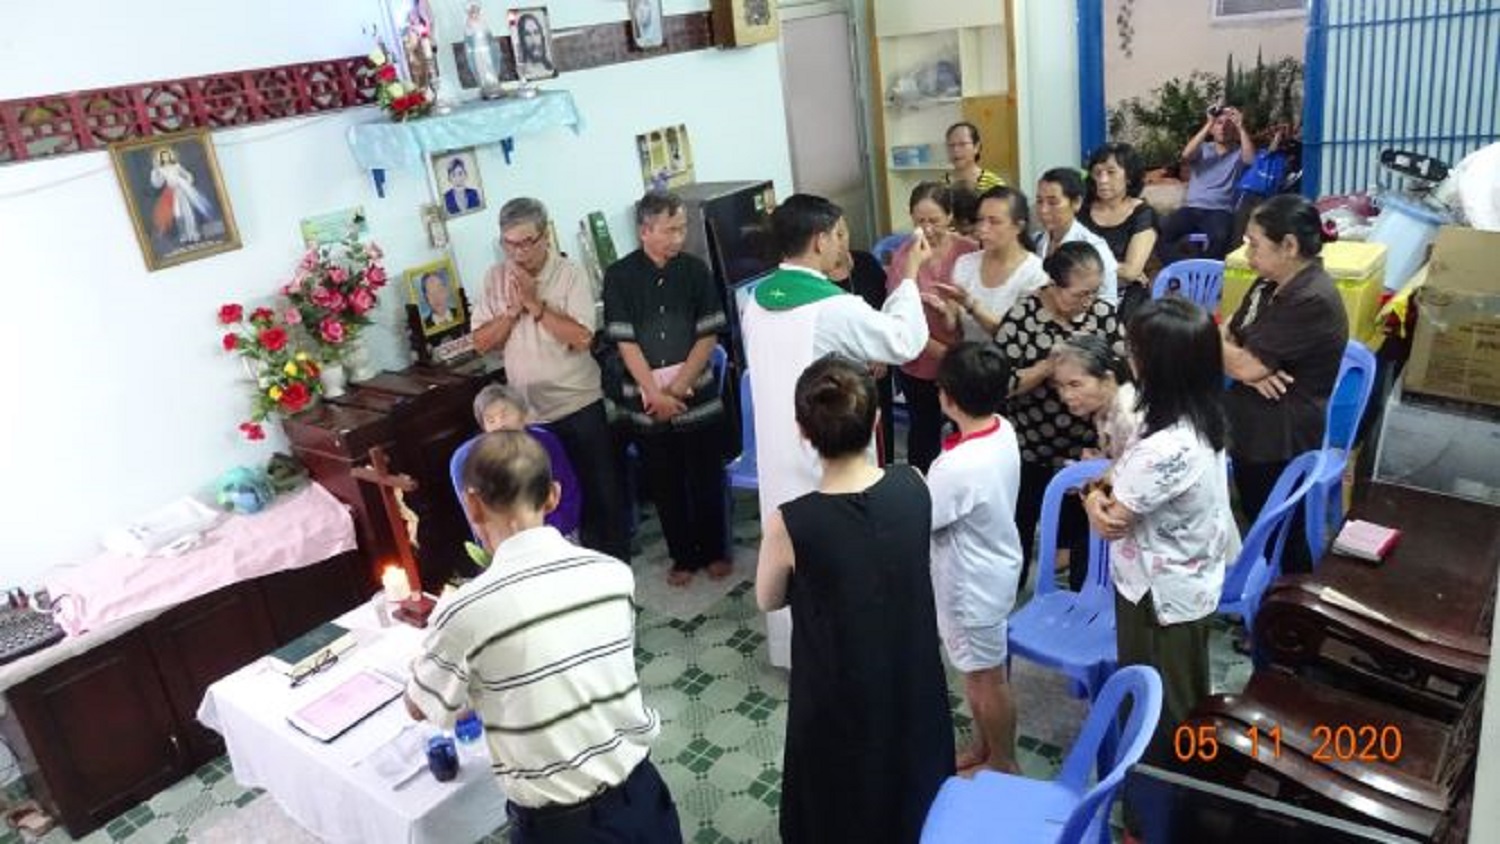 TGP.Sài Gòn - Giáo xứ Hiển Linh: Thánh lễ tại nhà dành cho người già yếu, bệnh tật ngày 5-11-2020